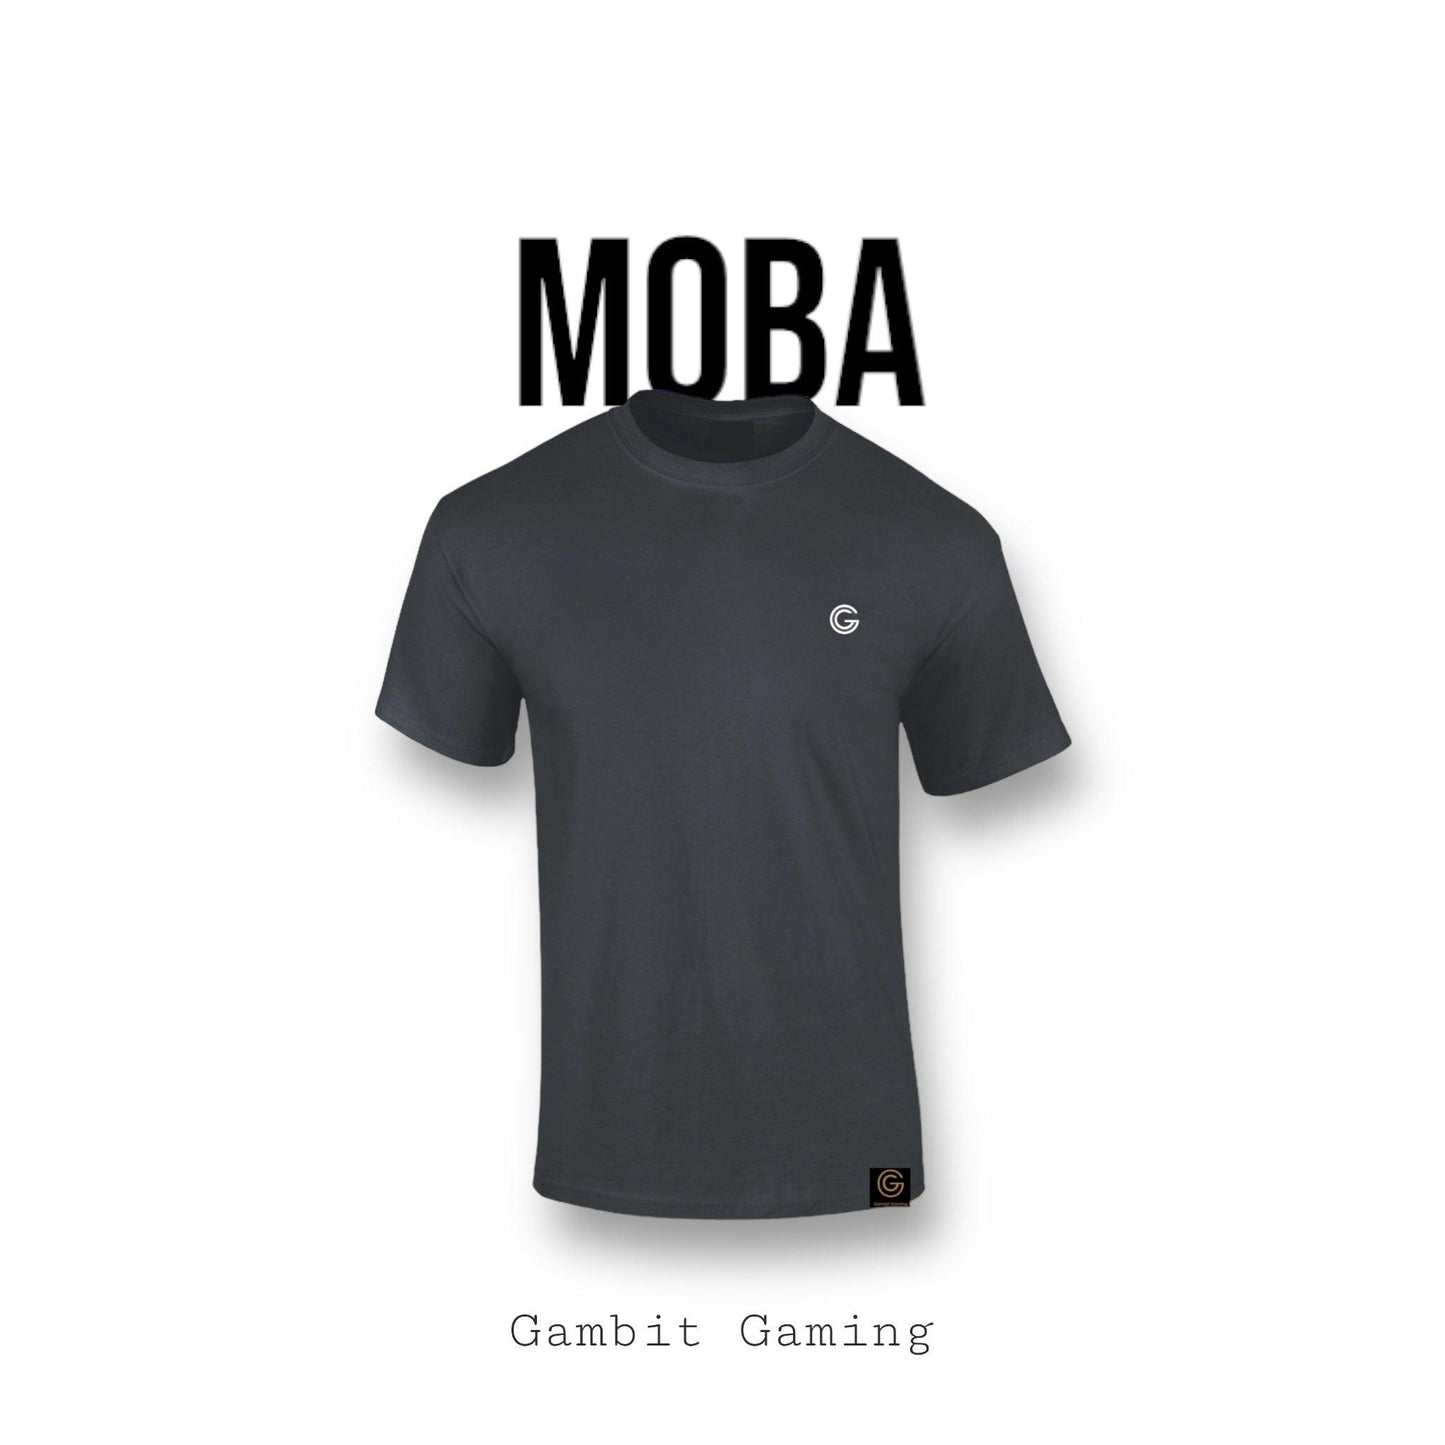 MOBA T-shirt - Gambit Gaming